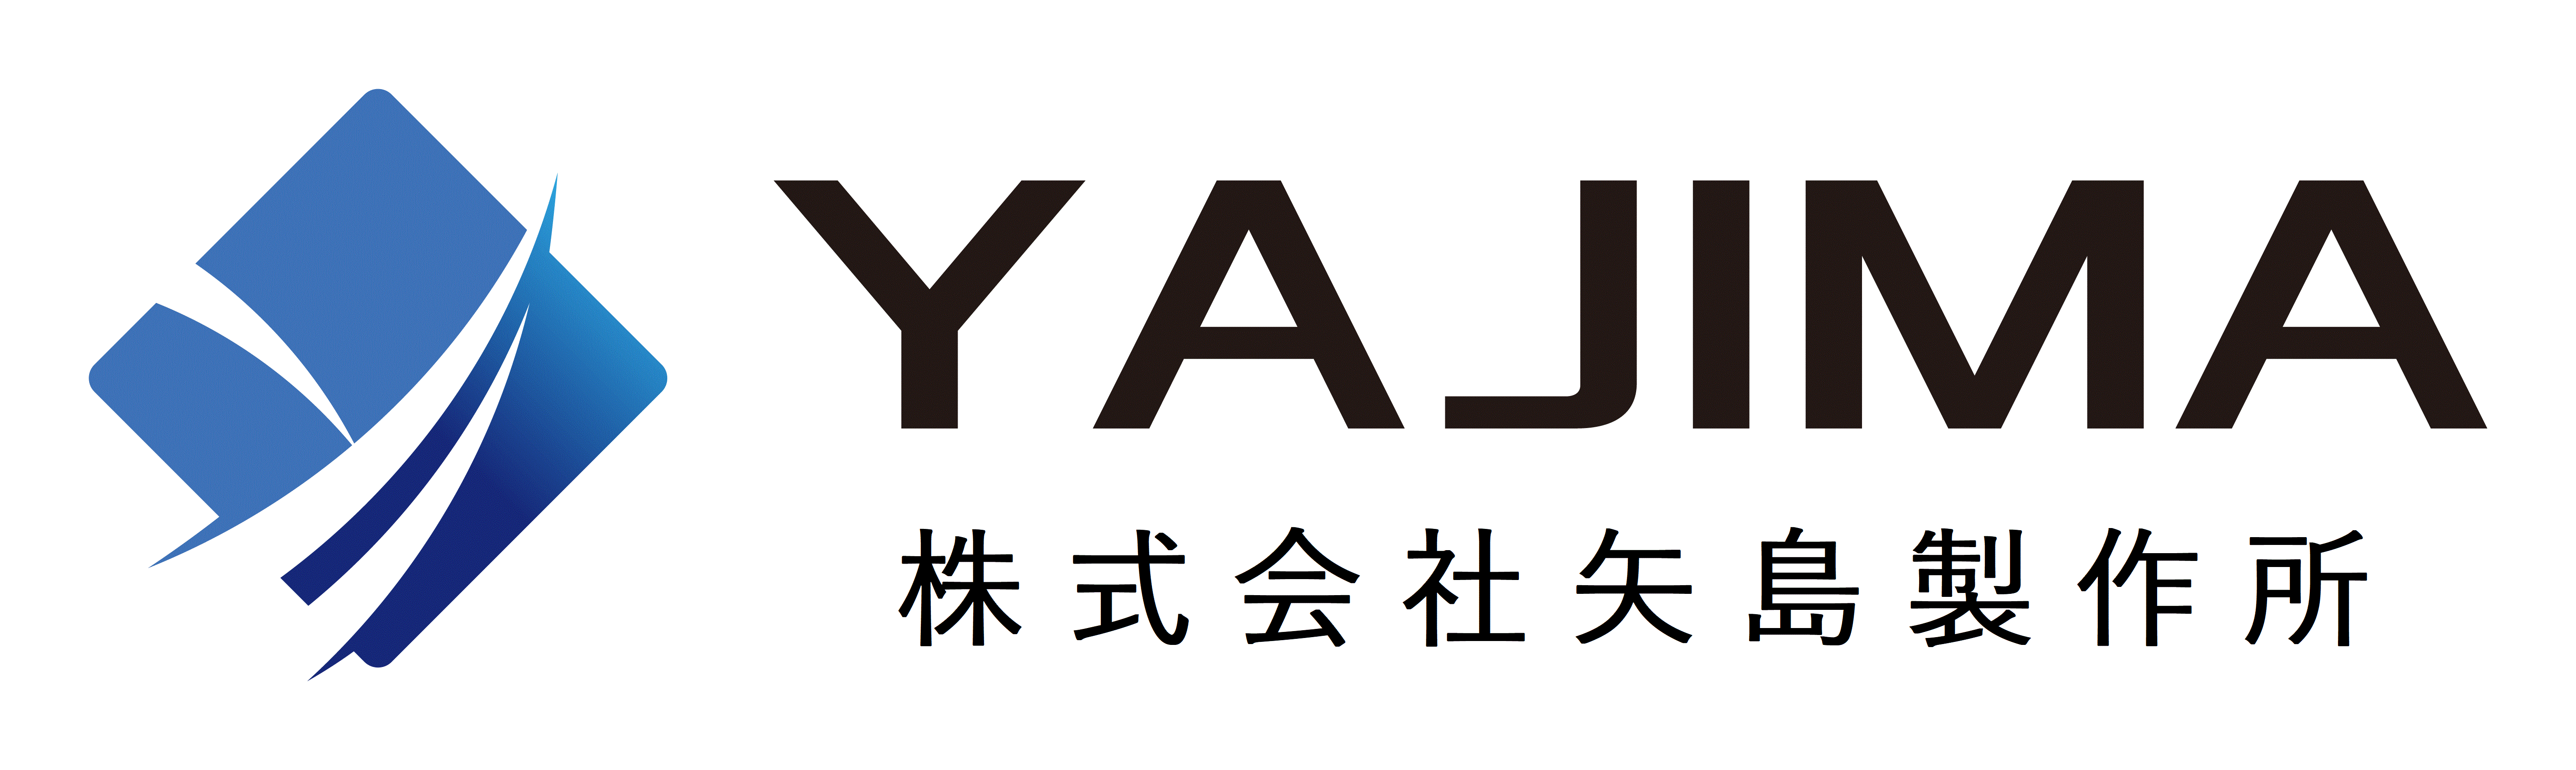 株式会社 矢島製作所